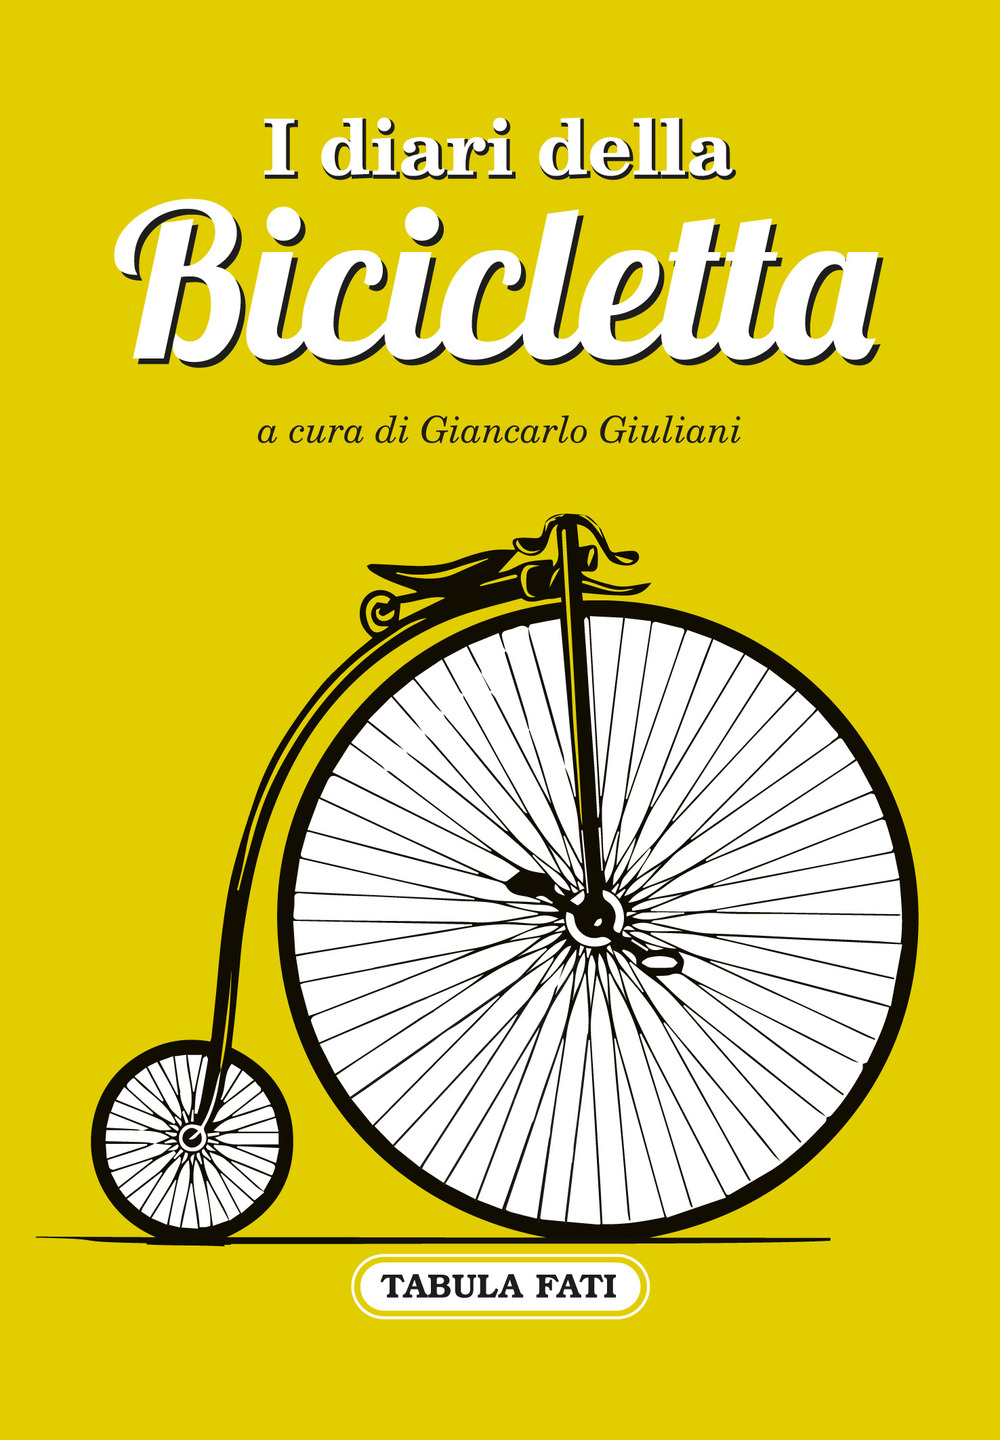 Image of I diari della bicicletta